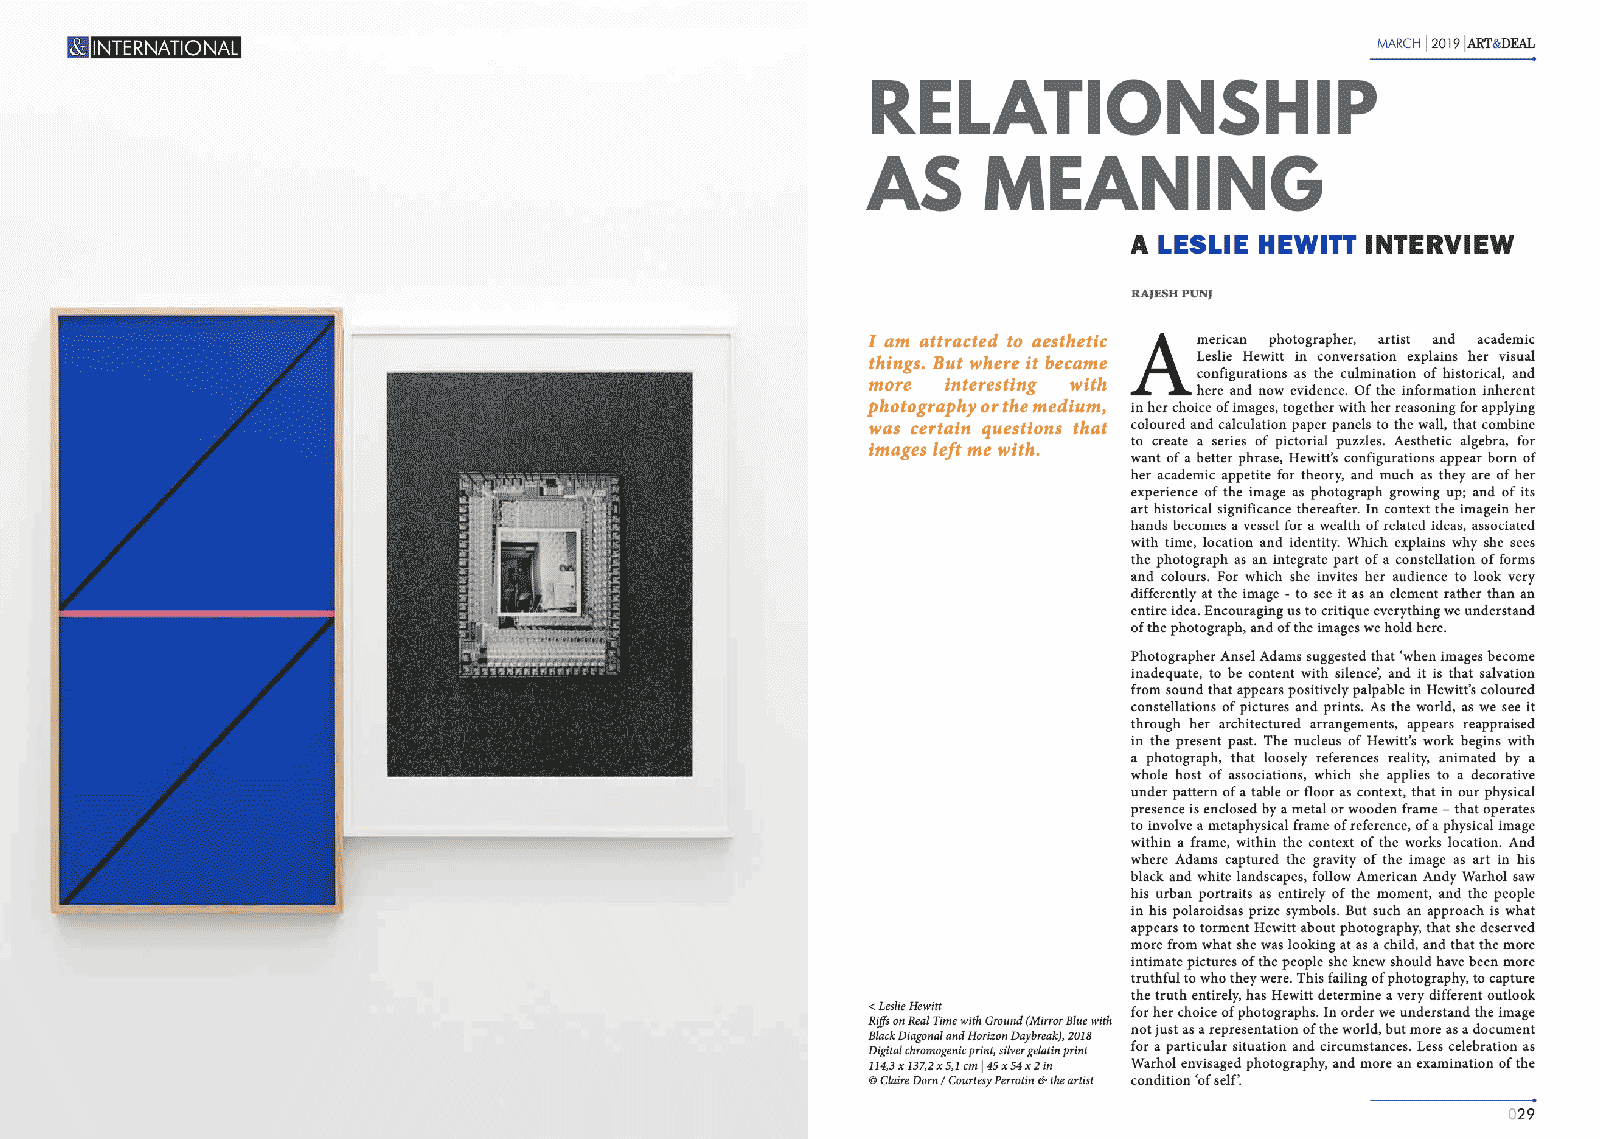 Leslie Hewitt, Relationship as Meaning, Art&Deal  (New Delhi)